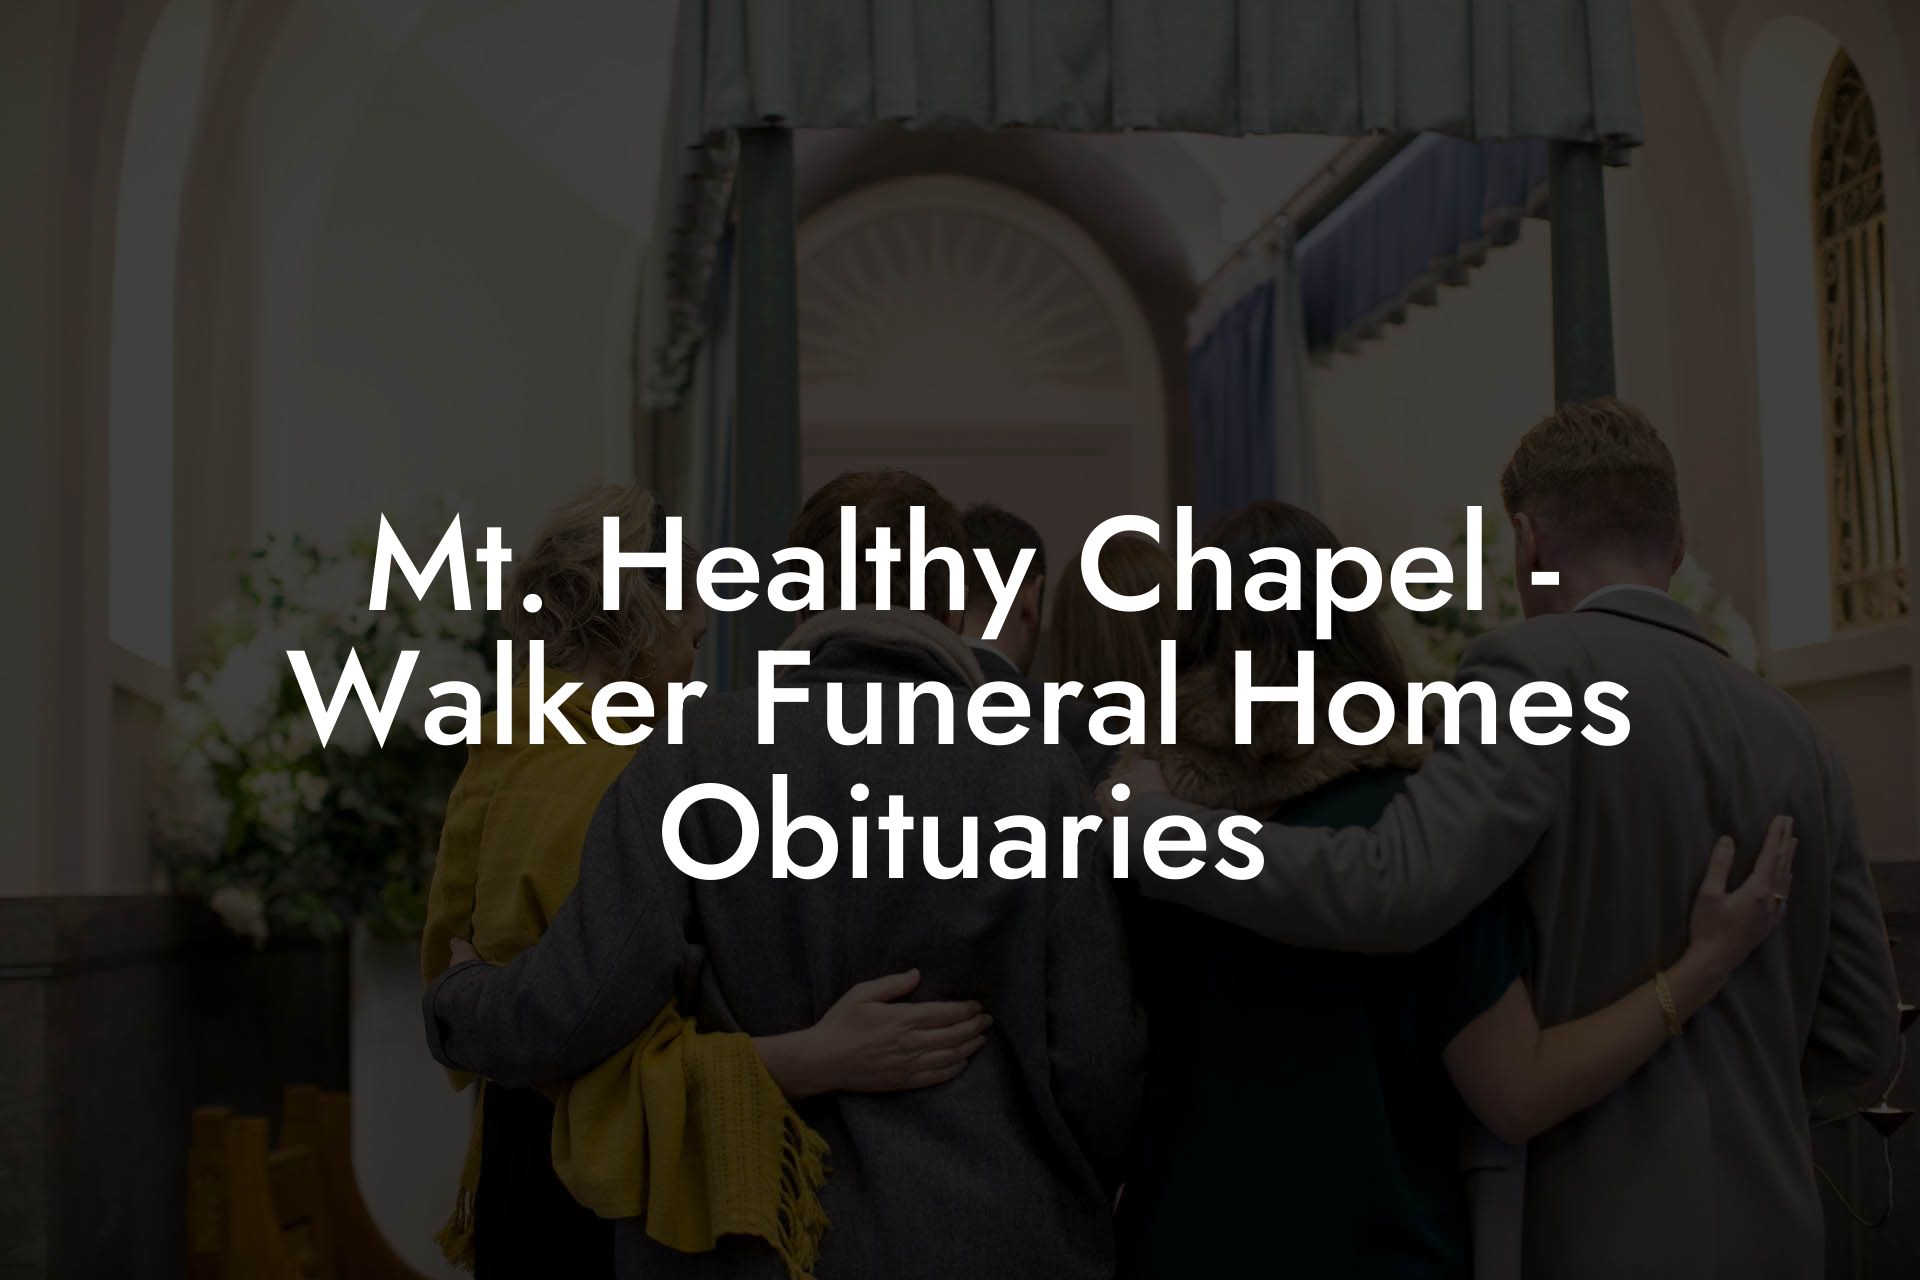 Mt. Healthy Chapel - Walker Funeral Homes Obituaries